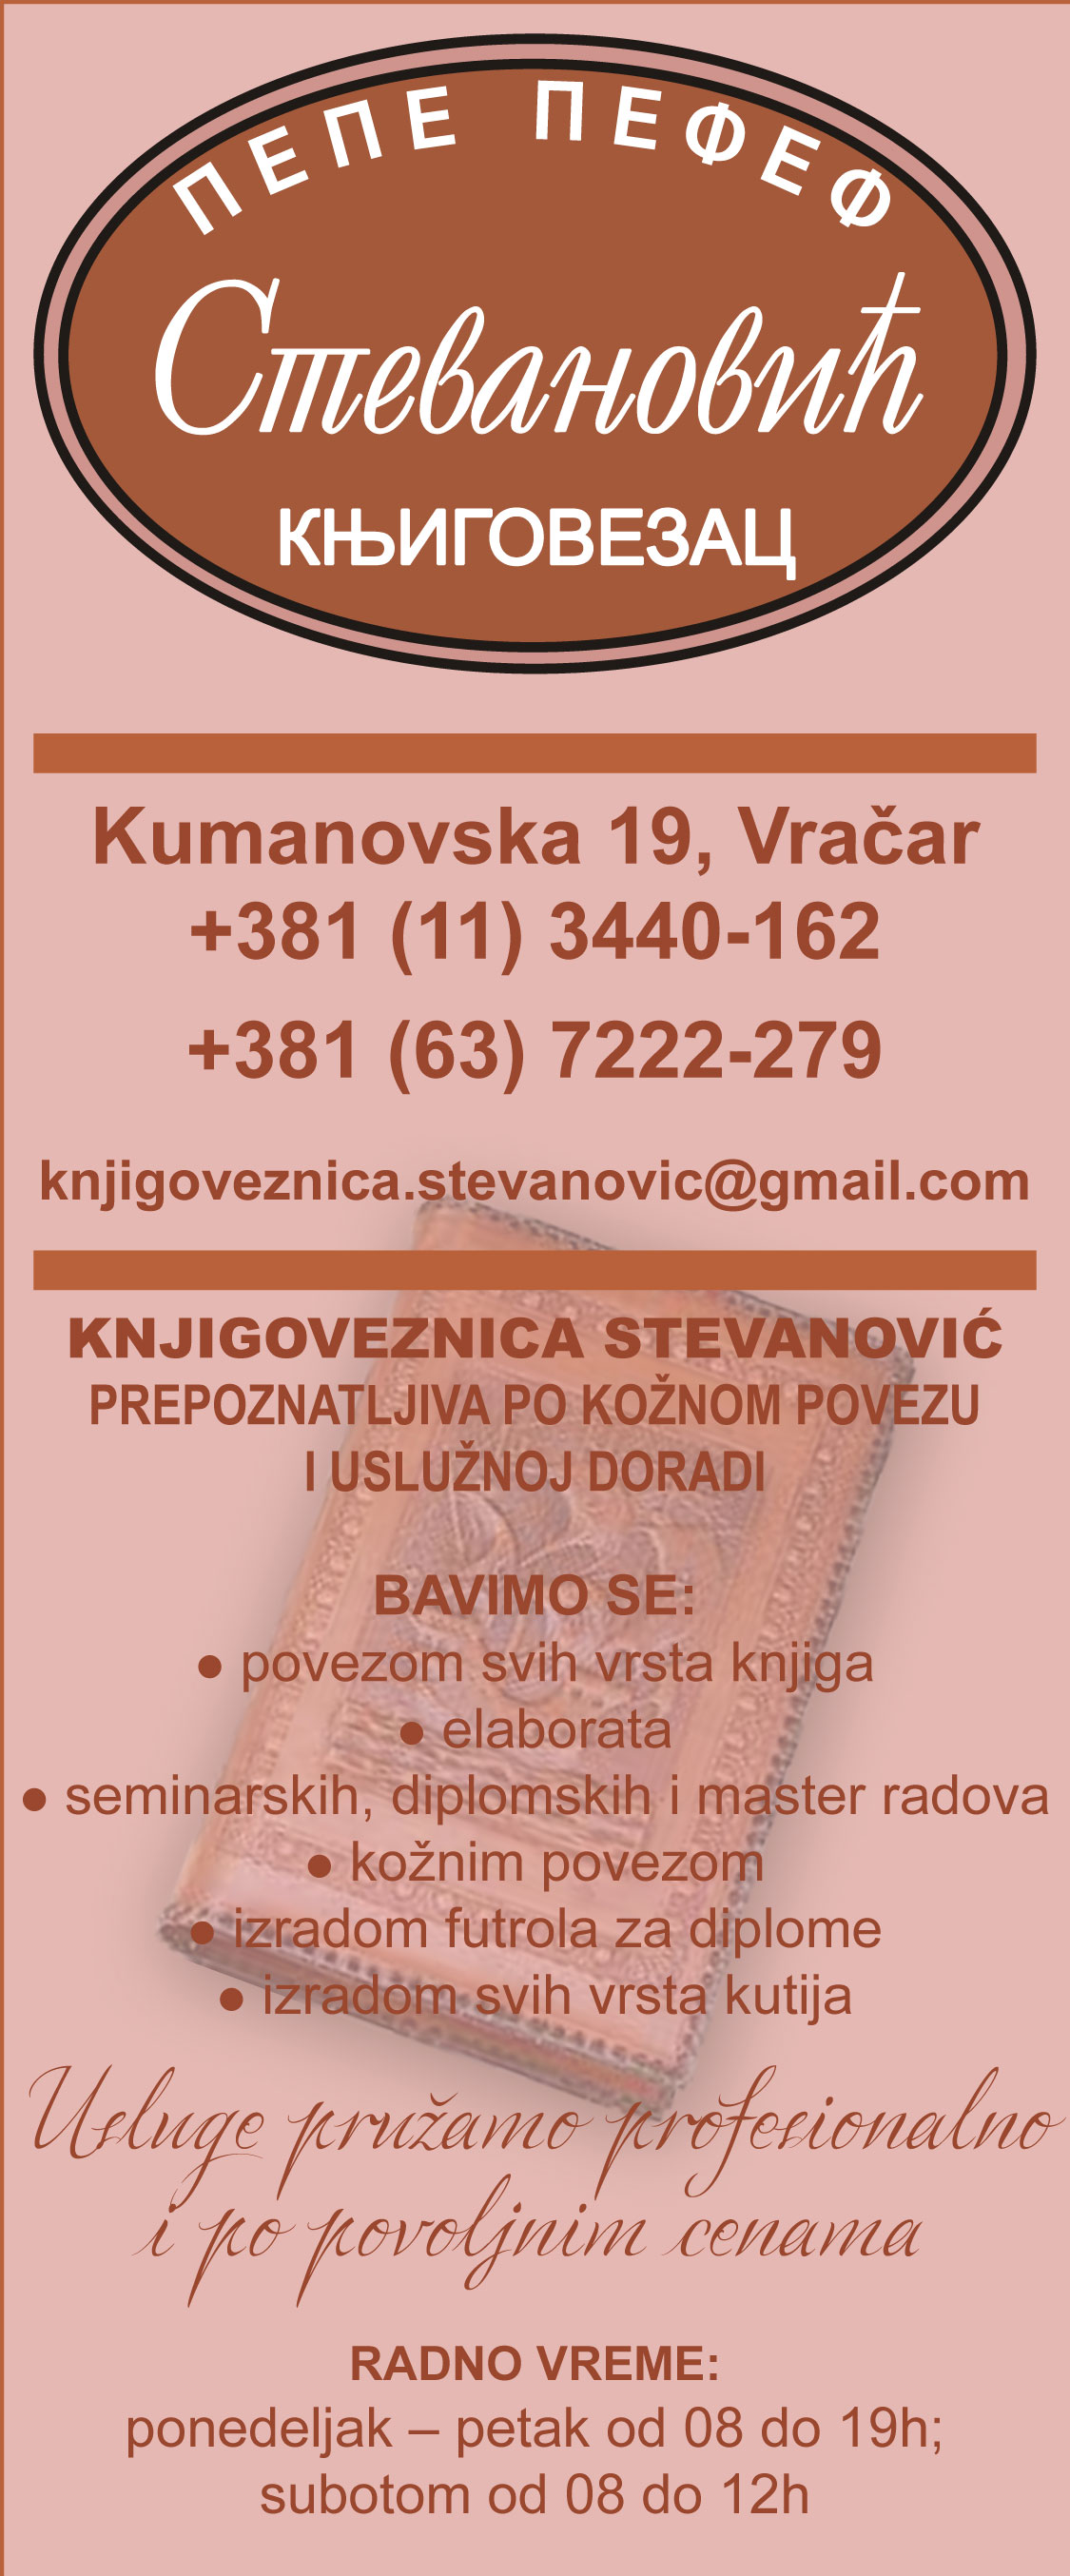 KNJIGOVEZNICA Stevanovic Beograd